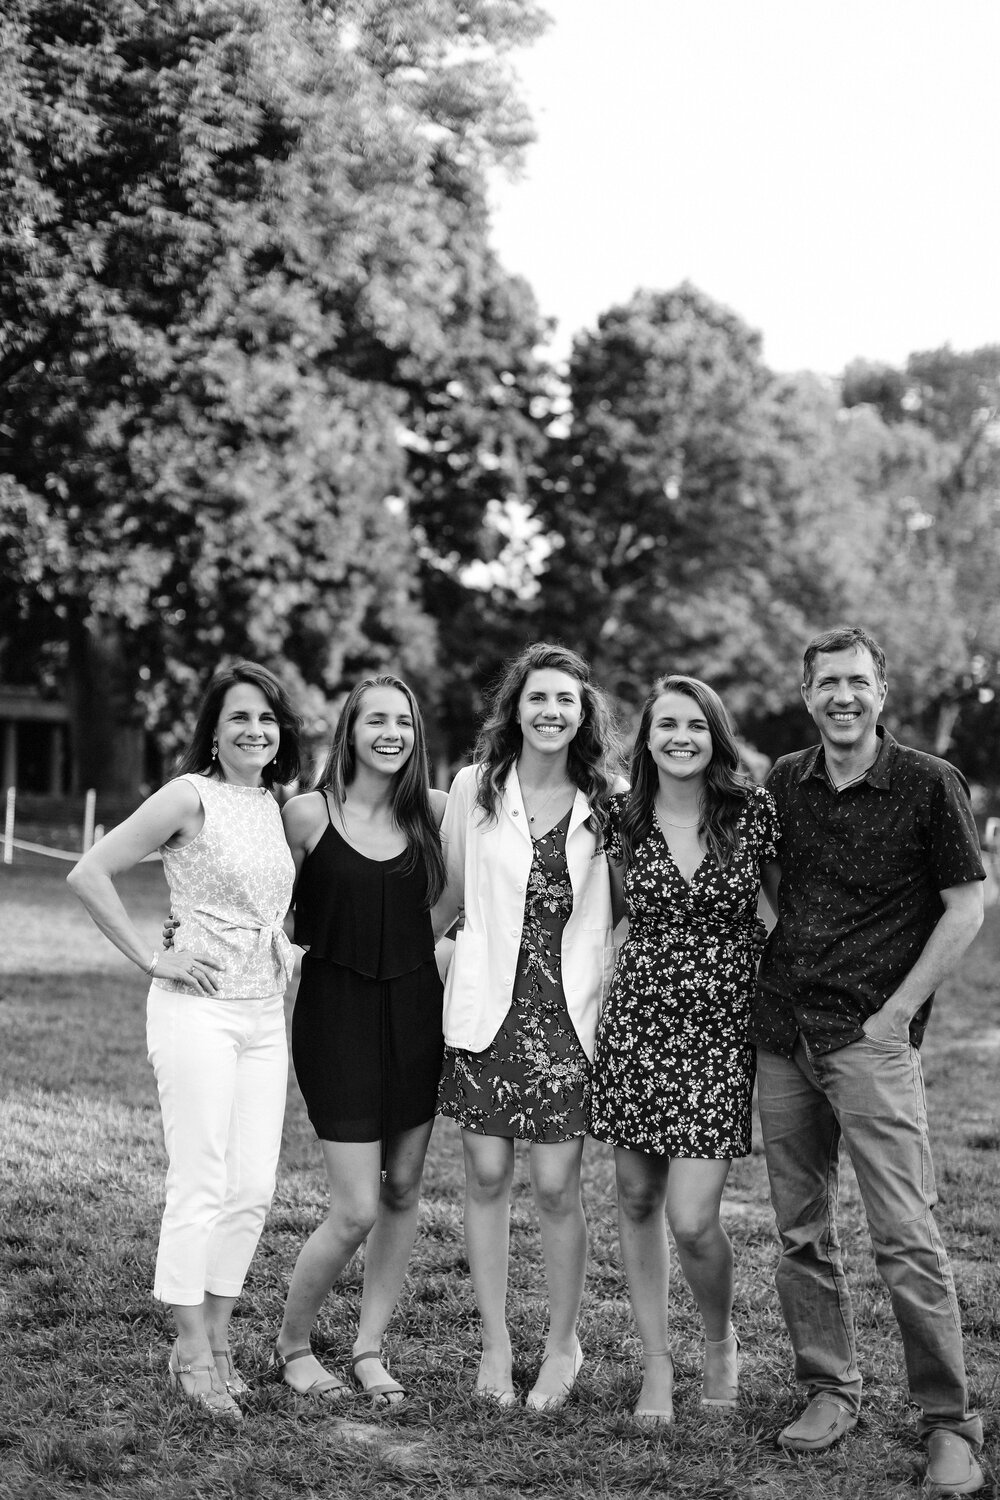  5/18/19  Charlottesville, VA  - Reichle family after UVA graduation.Photo credit: Amanda Maglione 